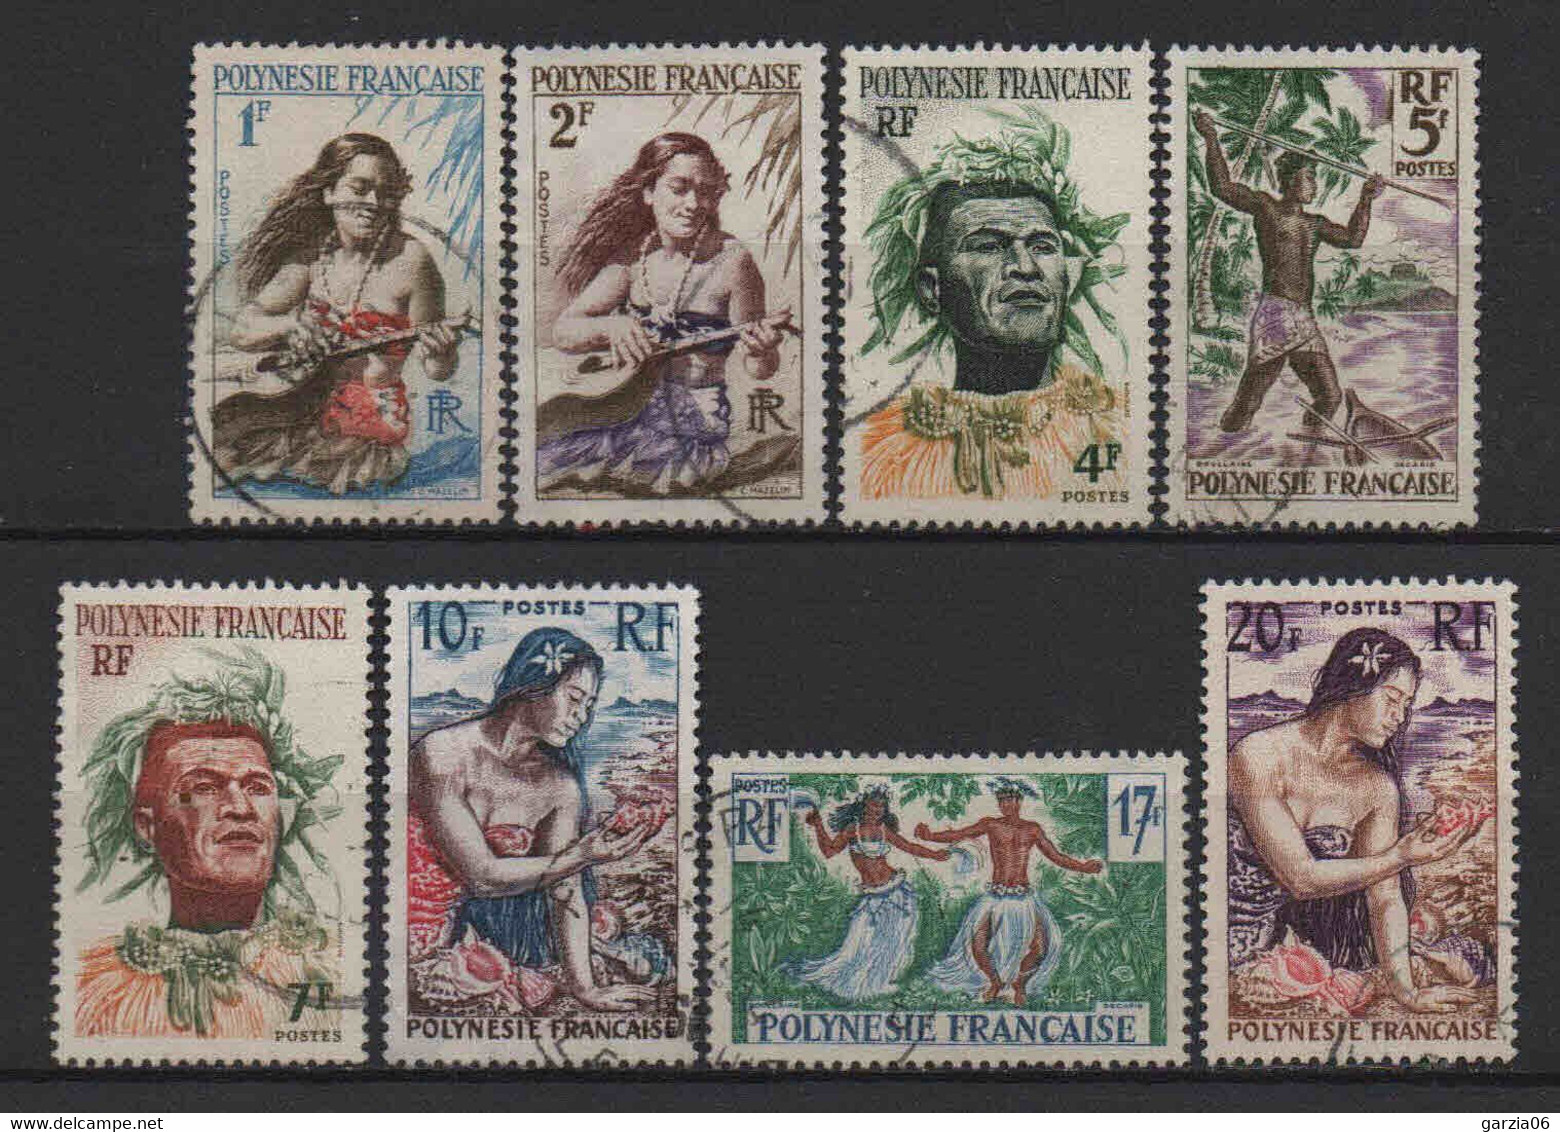 Polynésie - 1958  - Aspects De La Polynésie  -  N° 3 à 11 Sauf 8  - Oblit - Used - Oblitérés